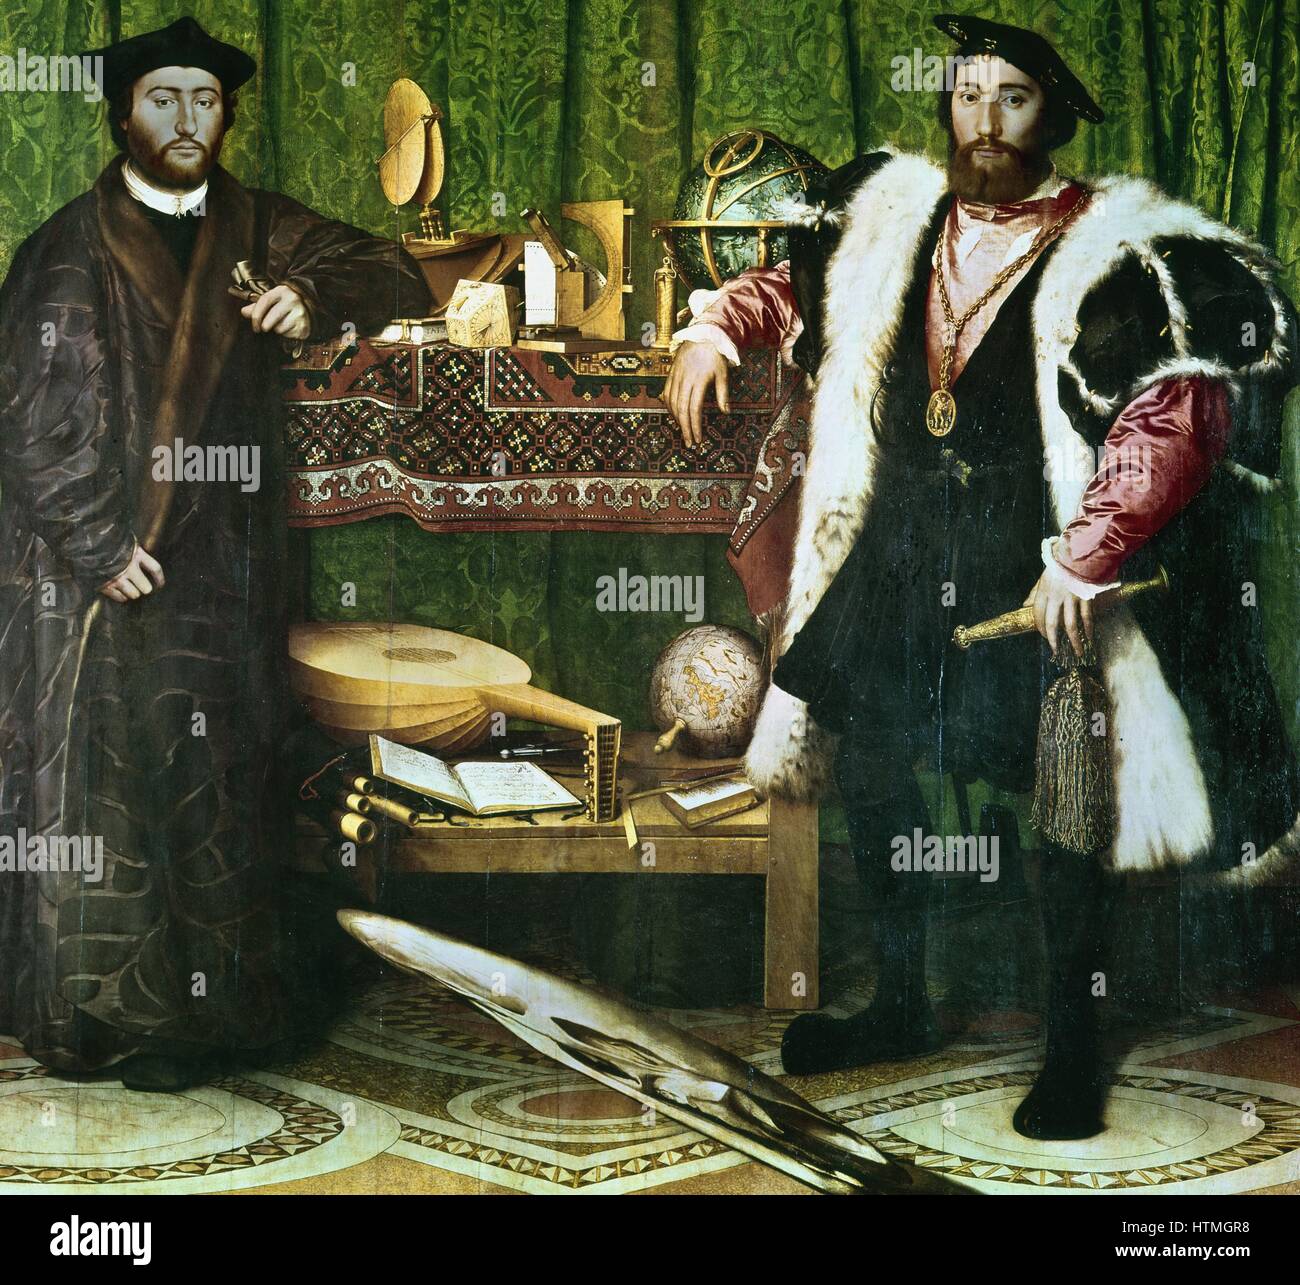 "Gli Ambasciatori, , (1533): Jean de Dinteville (1504-1555) e Georges de Selve (1508-1551), Vescovo di Lavaur, ambasciatori presso la corte di Enrico VIII d'Inghilterra. Hans Holbein il Giovane (1497-1543) tedesco-born artist. Le condizioni prima di effettuare la pulizia. Foto Stock